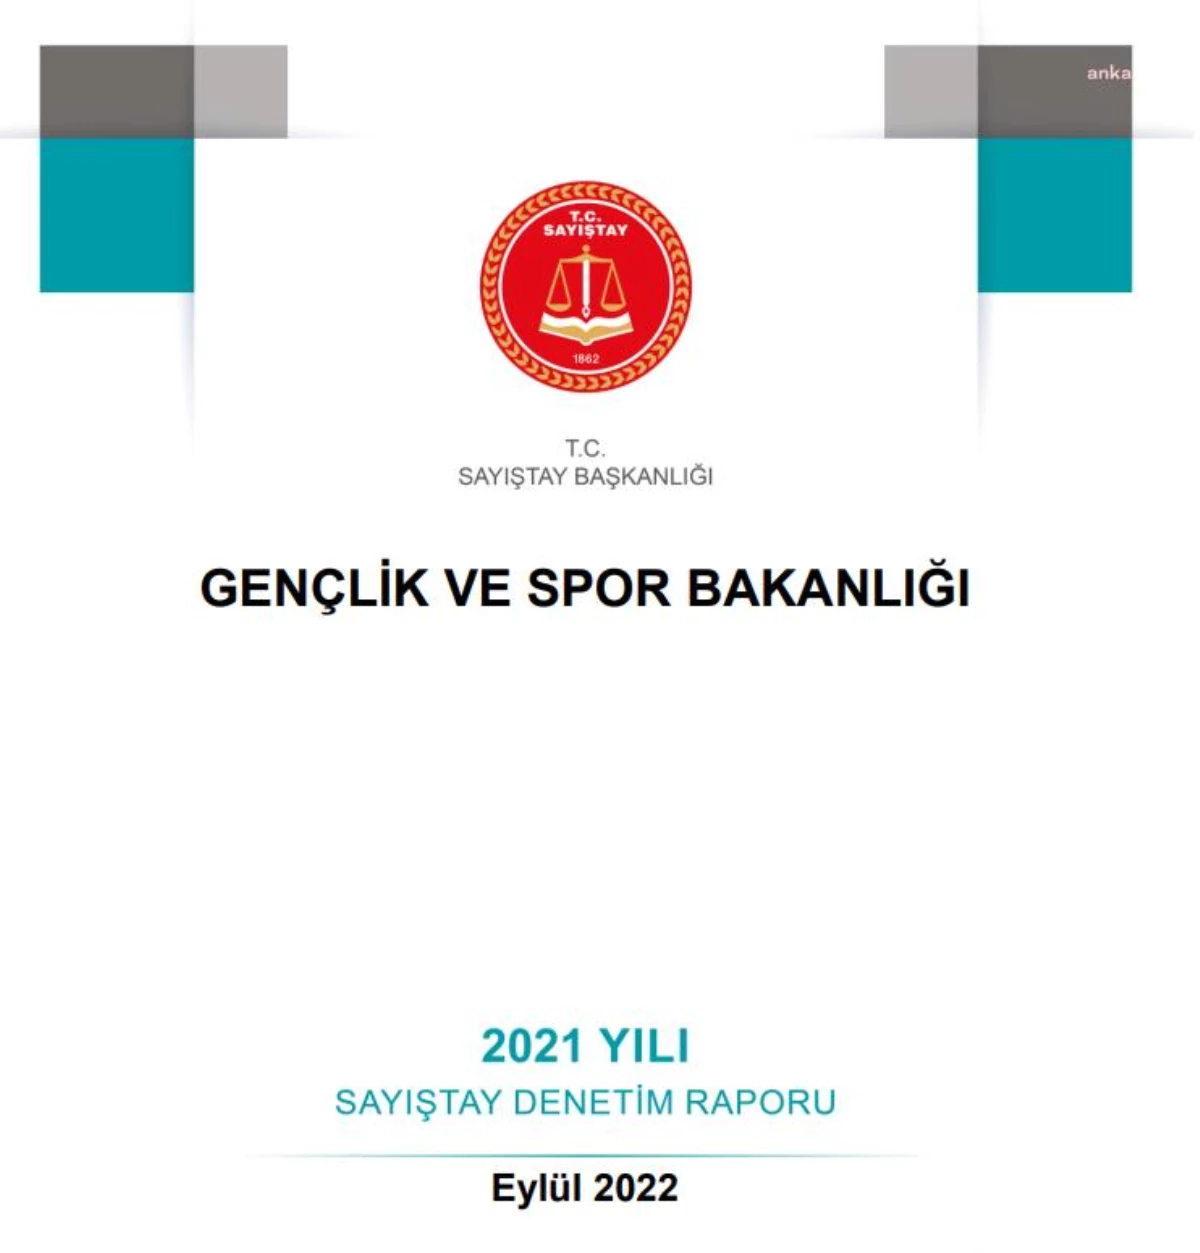 Gençlik ve Spor Bakanlığı, 64 Bin Metrekare Aoç Arazisini Bir Spor Kulübüne Tahsis Etti.